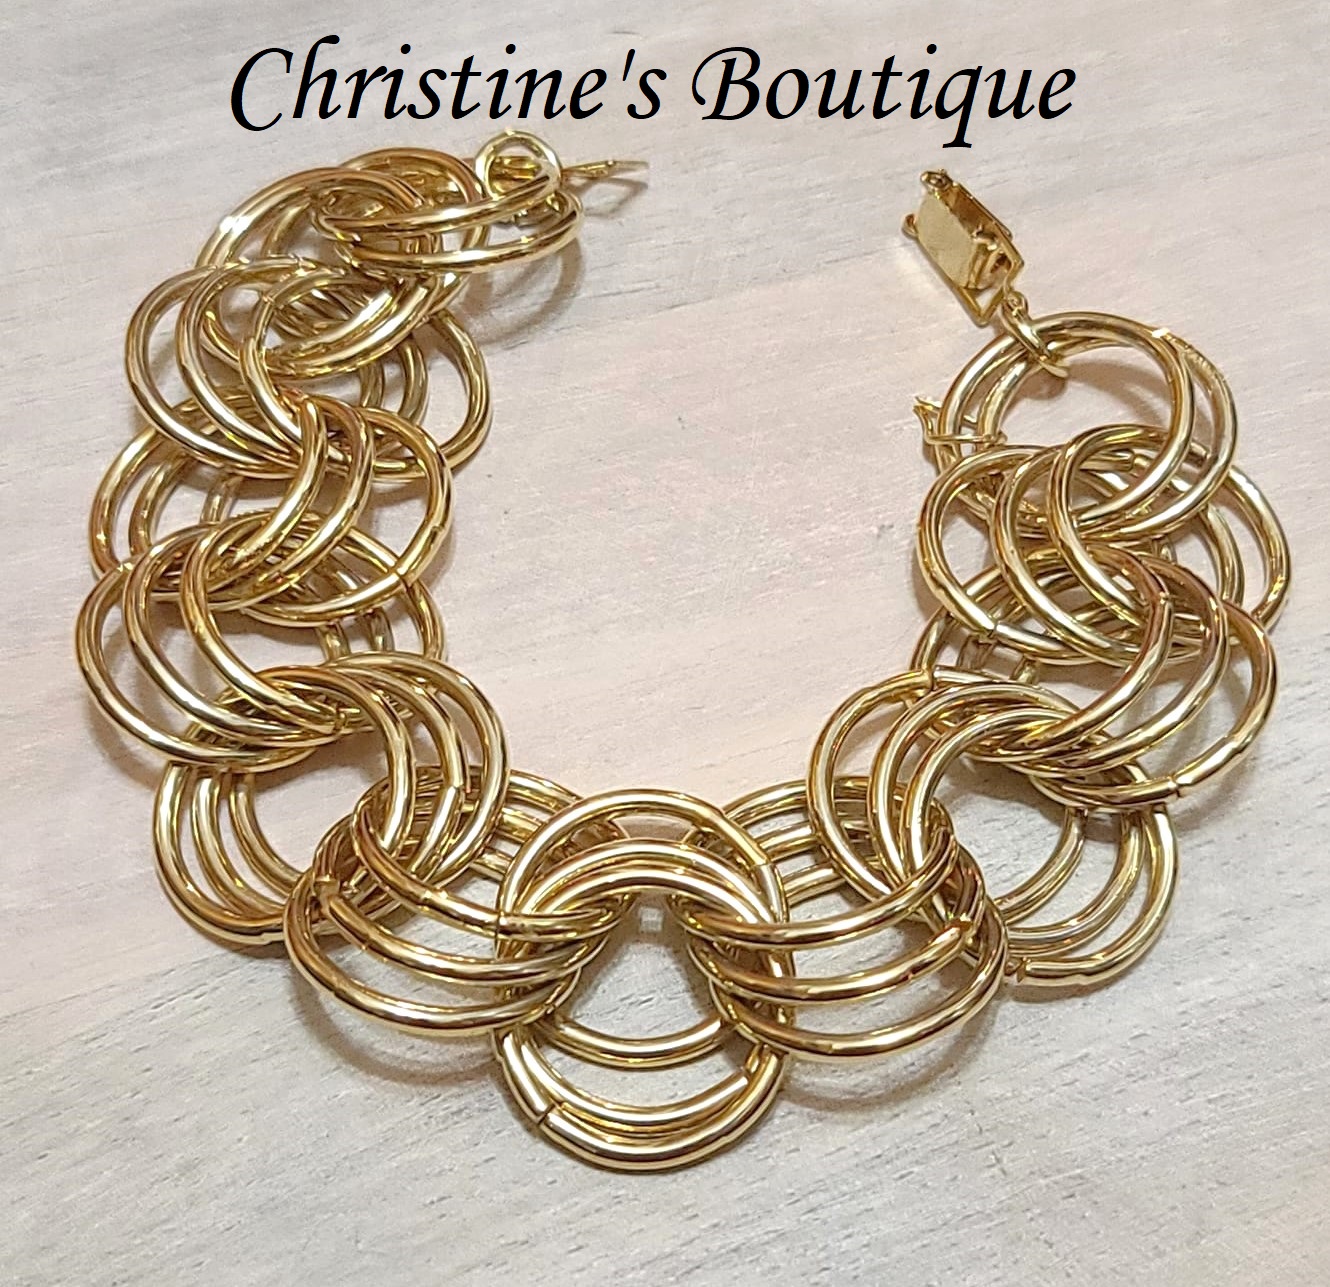 Vintage goldtone bracelet, link style with triple round link design